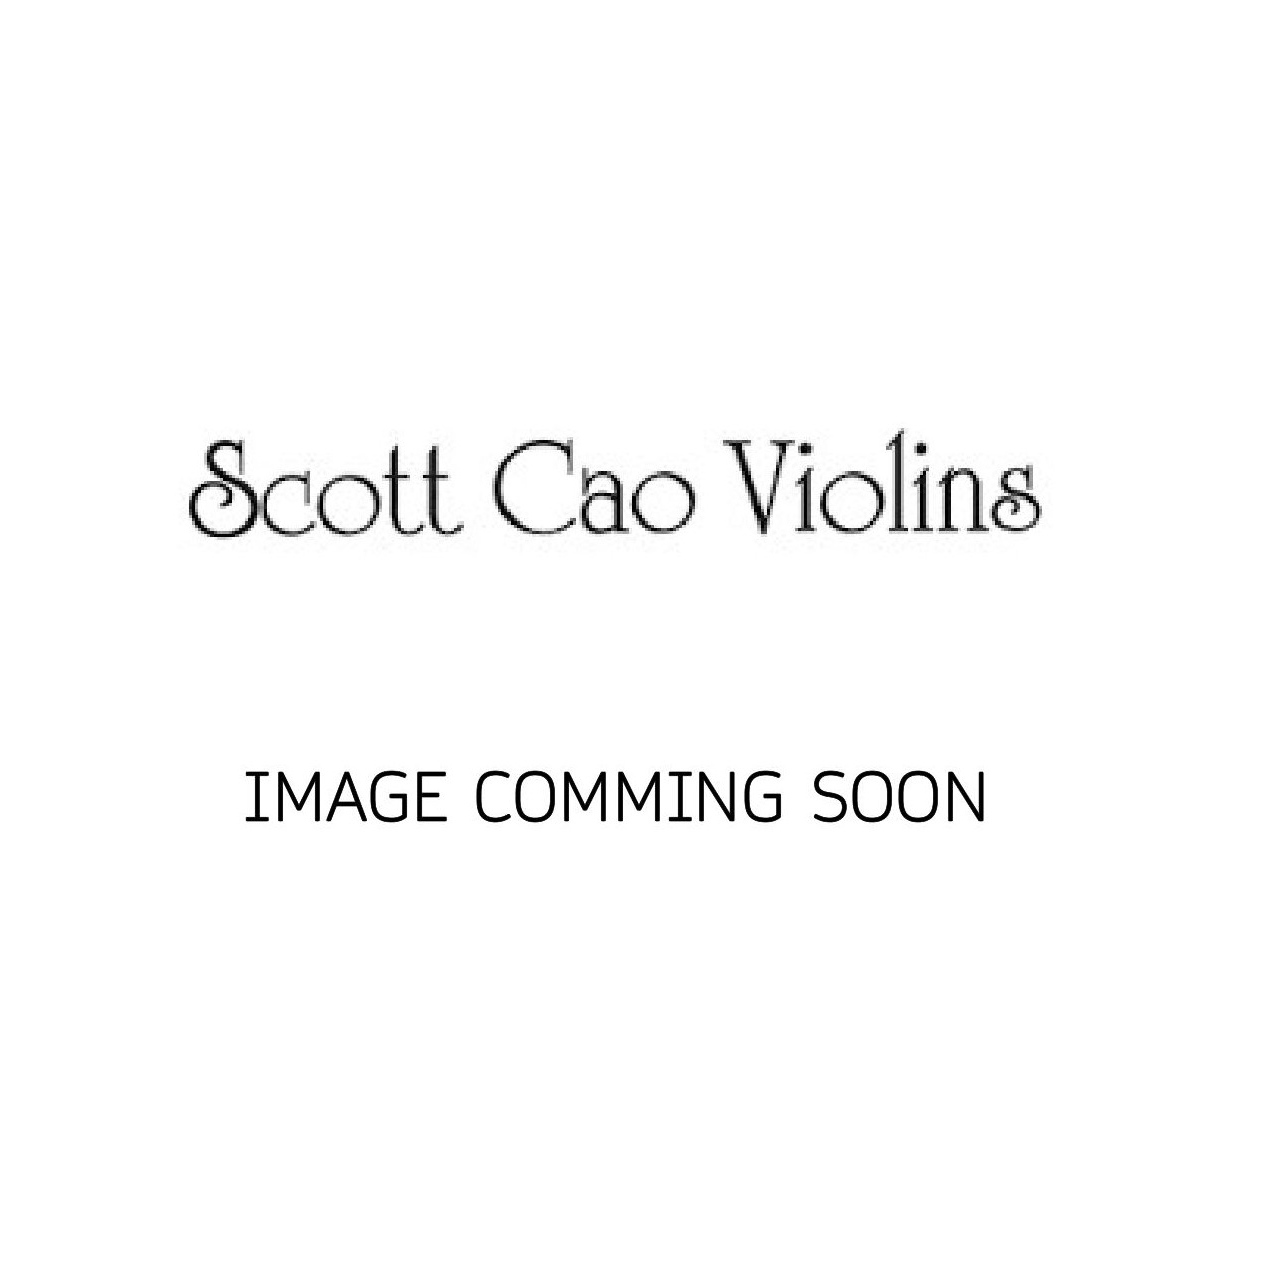 Scott Cao Cello 1/2 Strad Modell